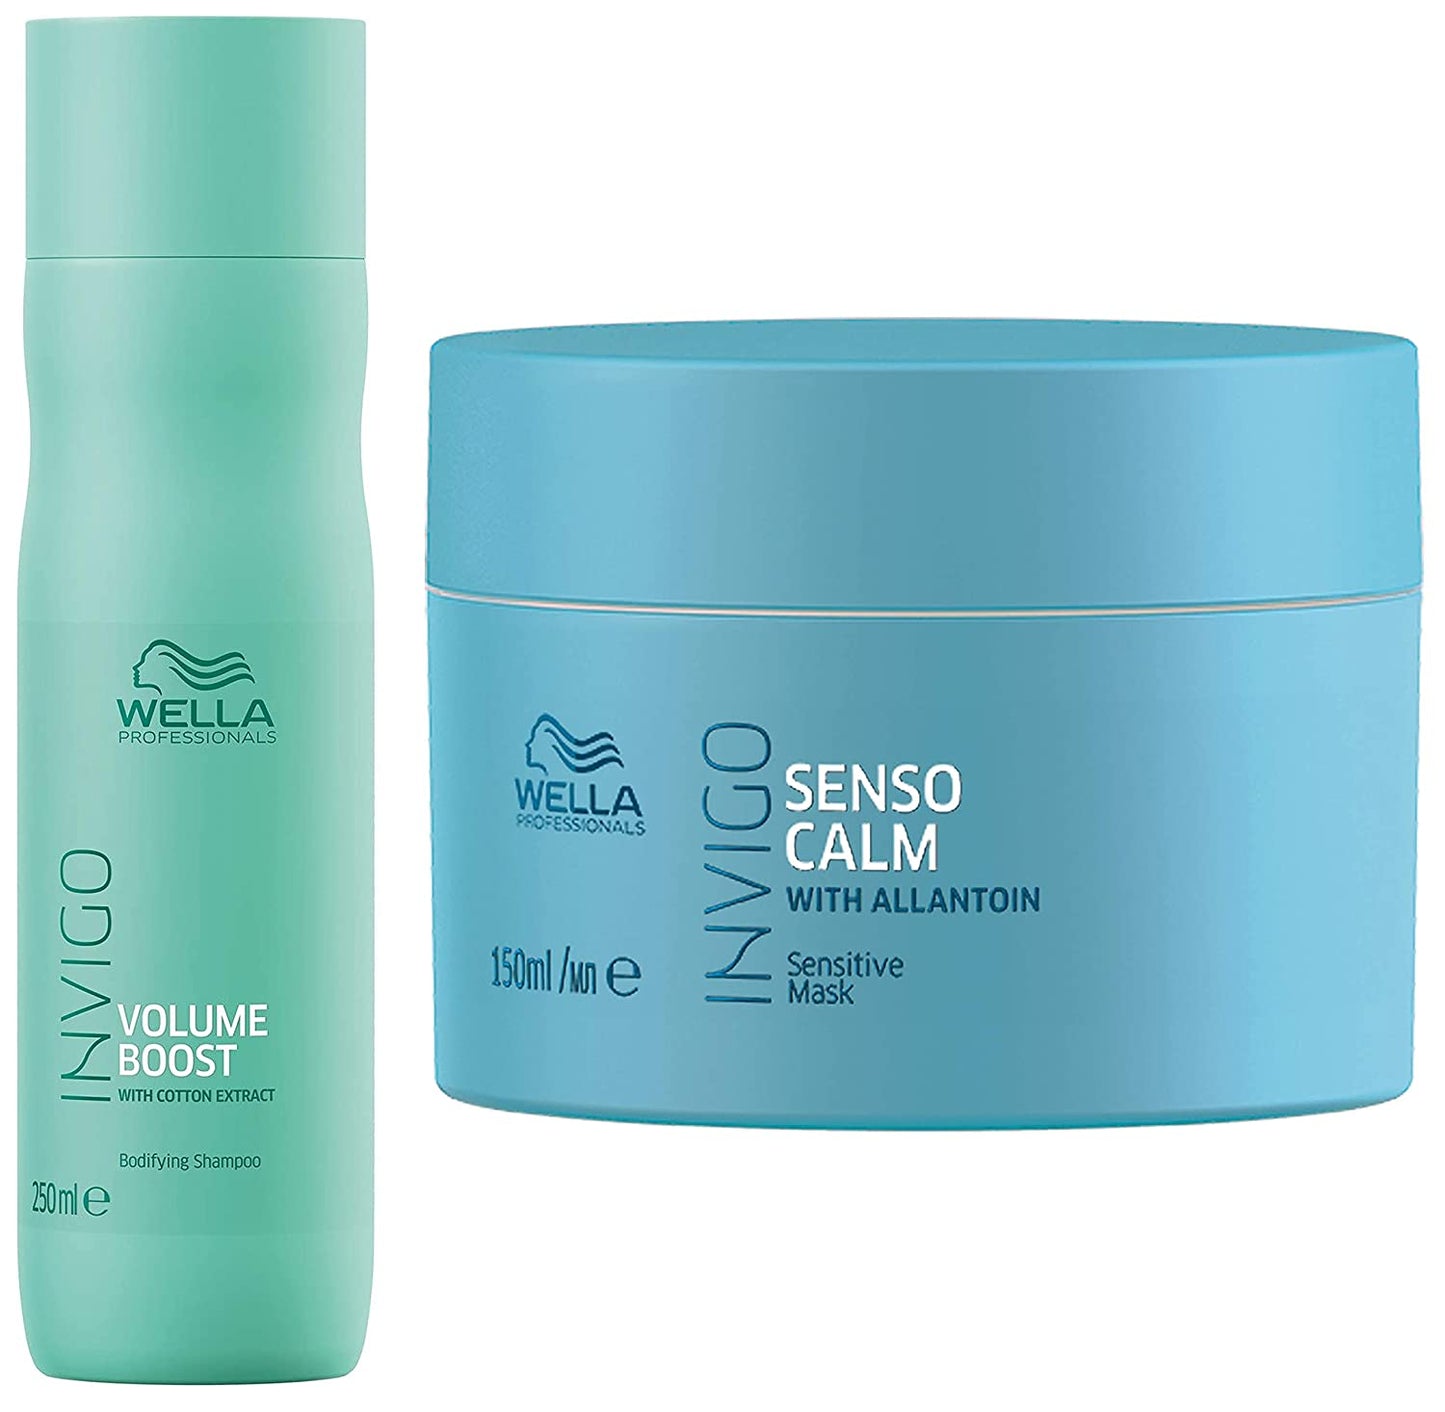 Wella Professionals Invigo Volume Boost Bodifying Shampoo, 250 ml+Wella Professionals Invigo Balance Senso Calm Sensitive Mask, 150 ml